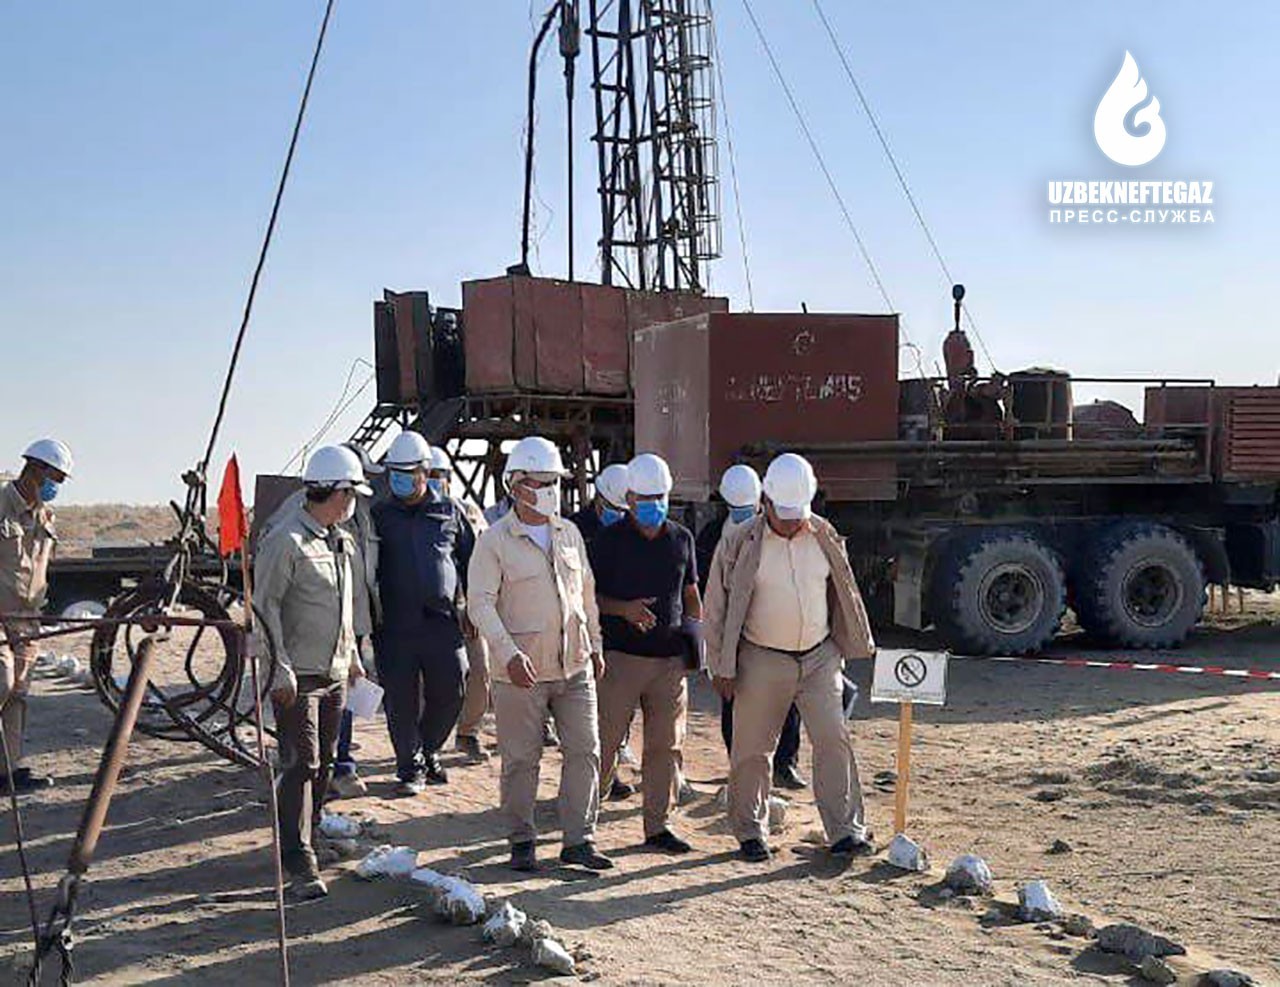 «Узбекнефтегаз»: Председатель Правления посетил Кашкадарью с целью изучения деятельности месторождений природного газа и скважин 